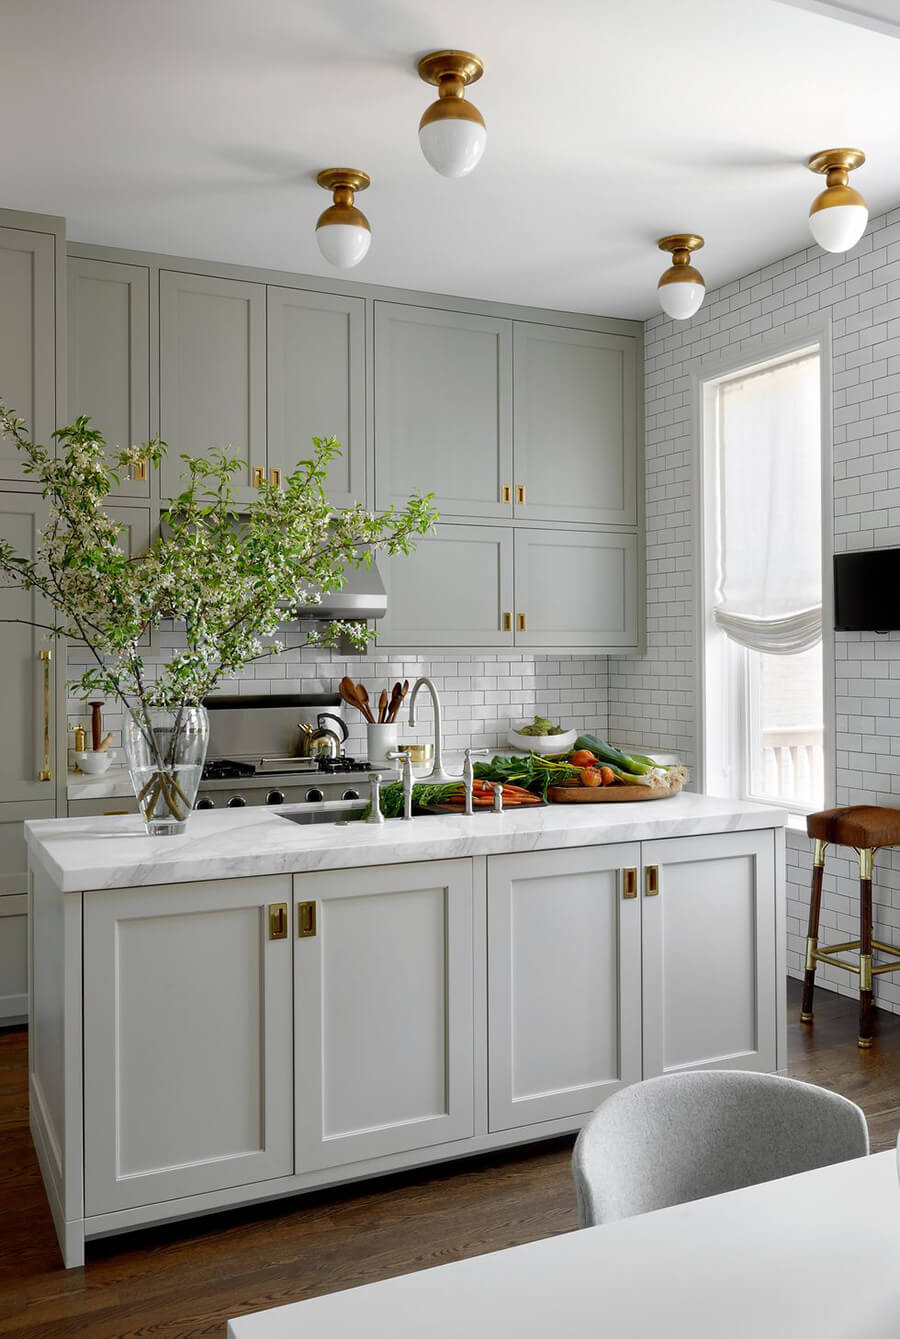 En esta imagen se muestra a una cocina abierta, cuyas paredes están revestidas en azulejos. Es una de las ideas para cocina.